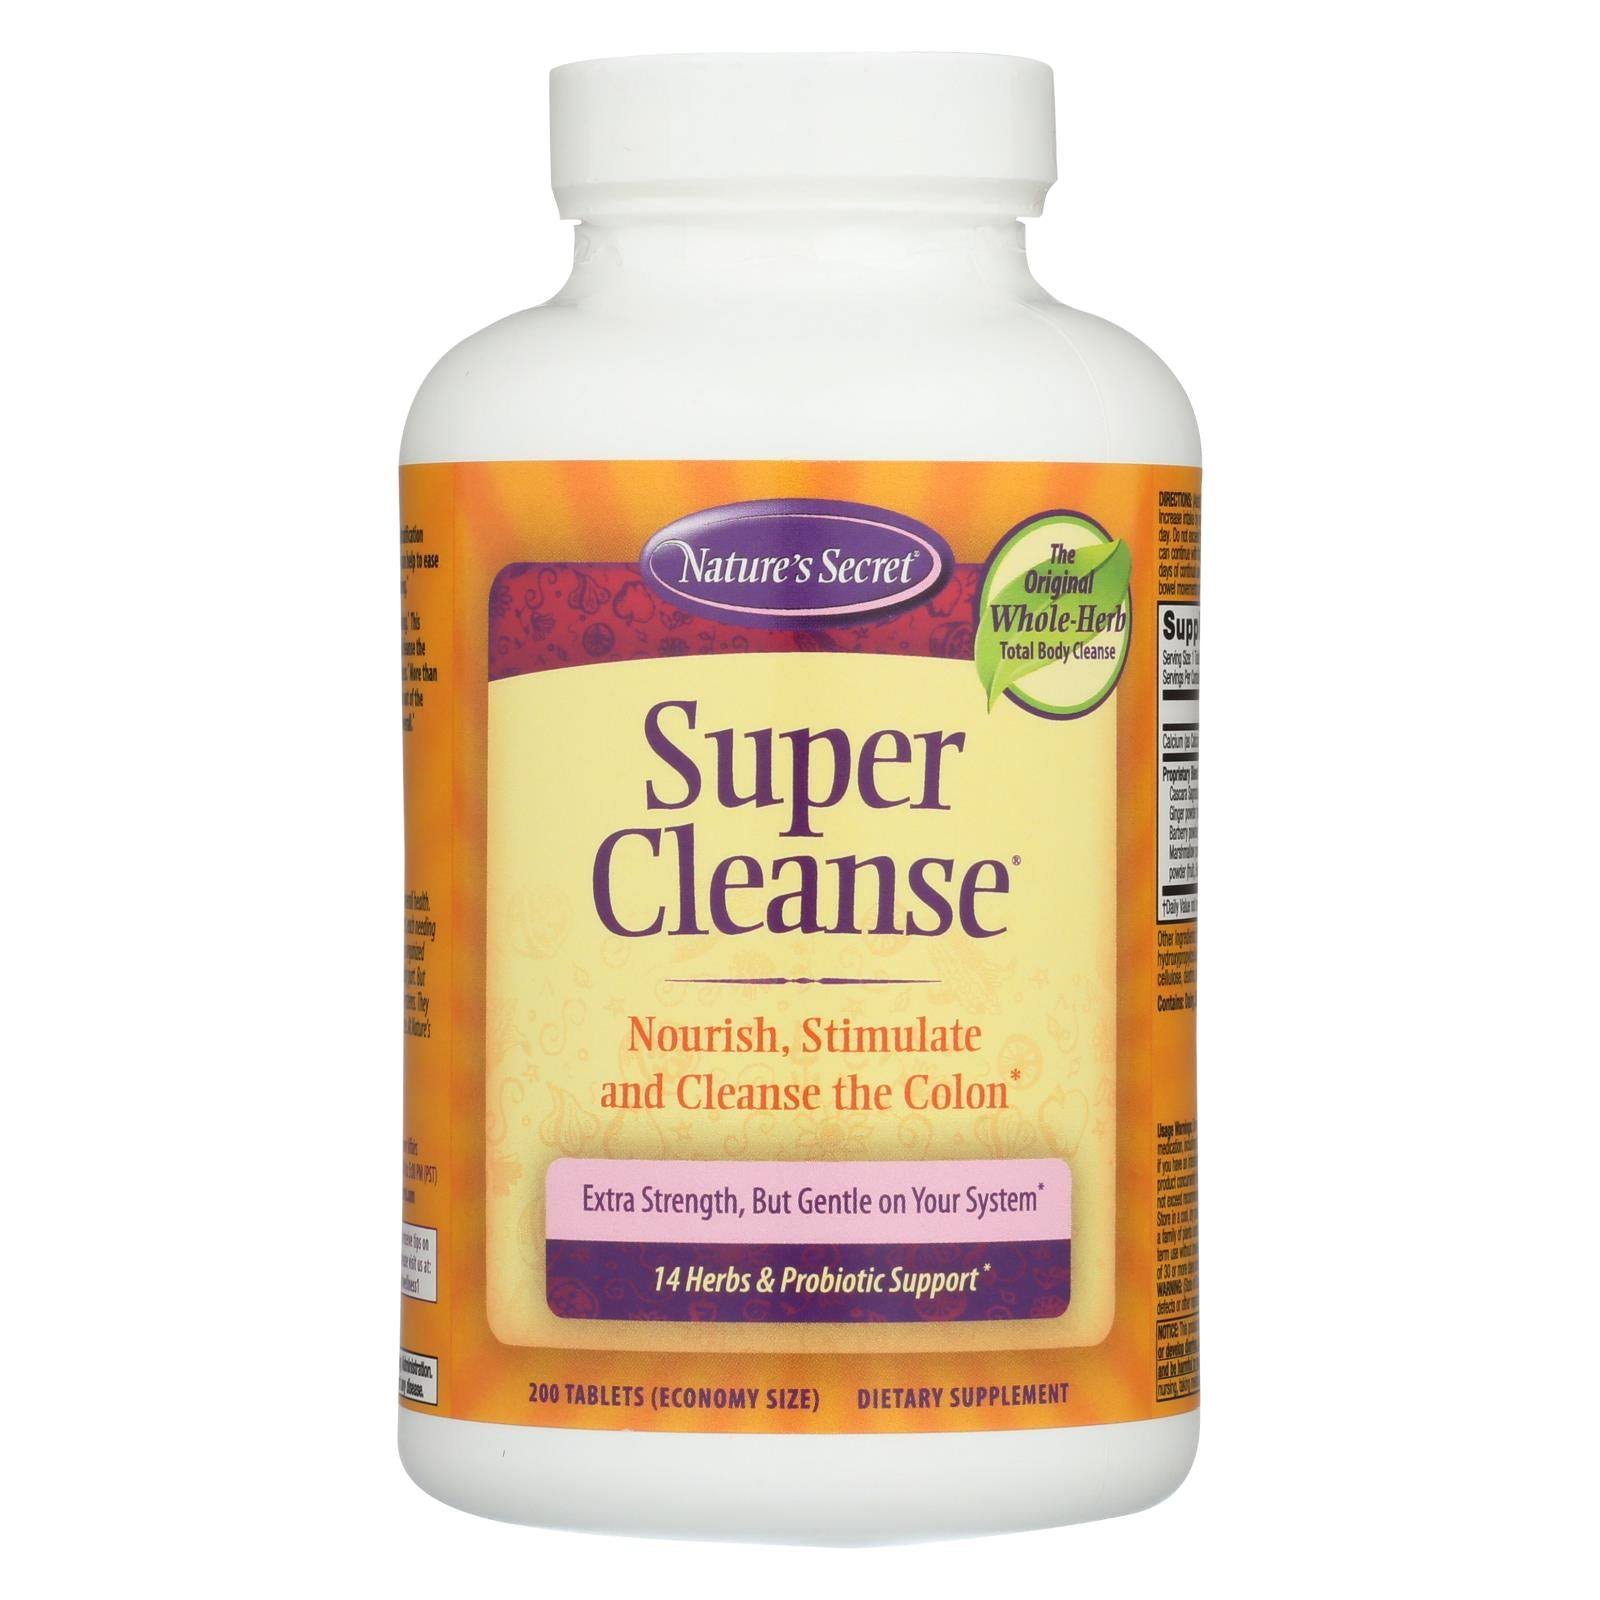 Nature's Secret Super Cleanse for Your Colon Supplement - 200 Tablets